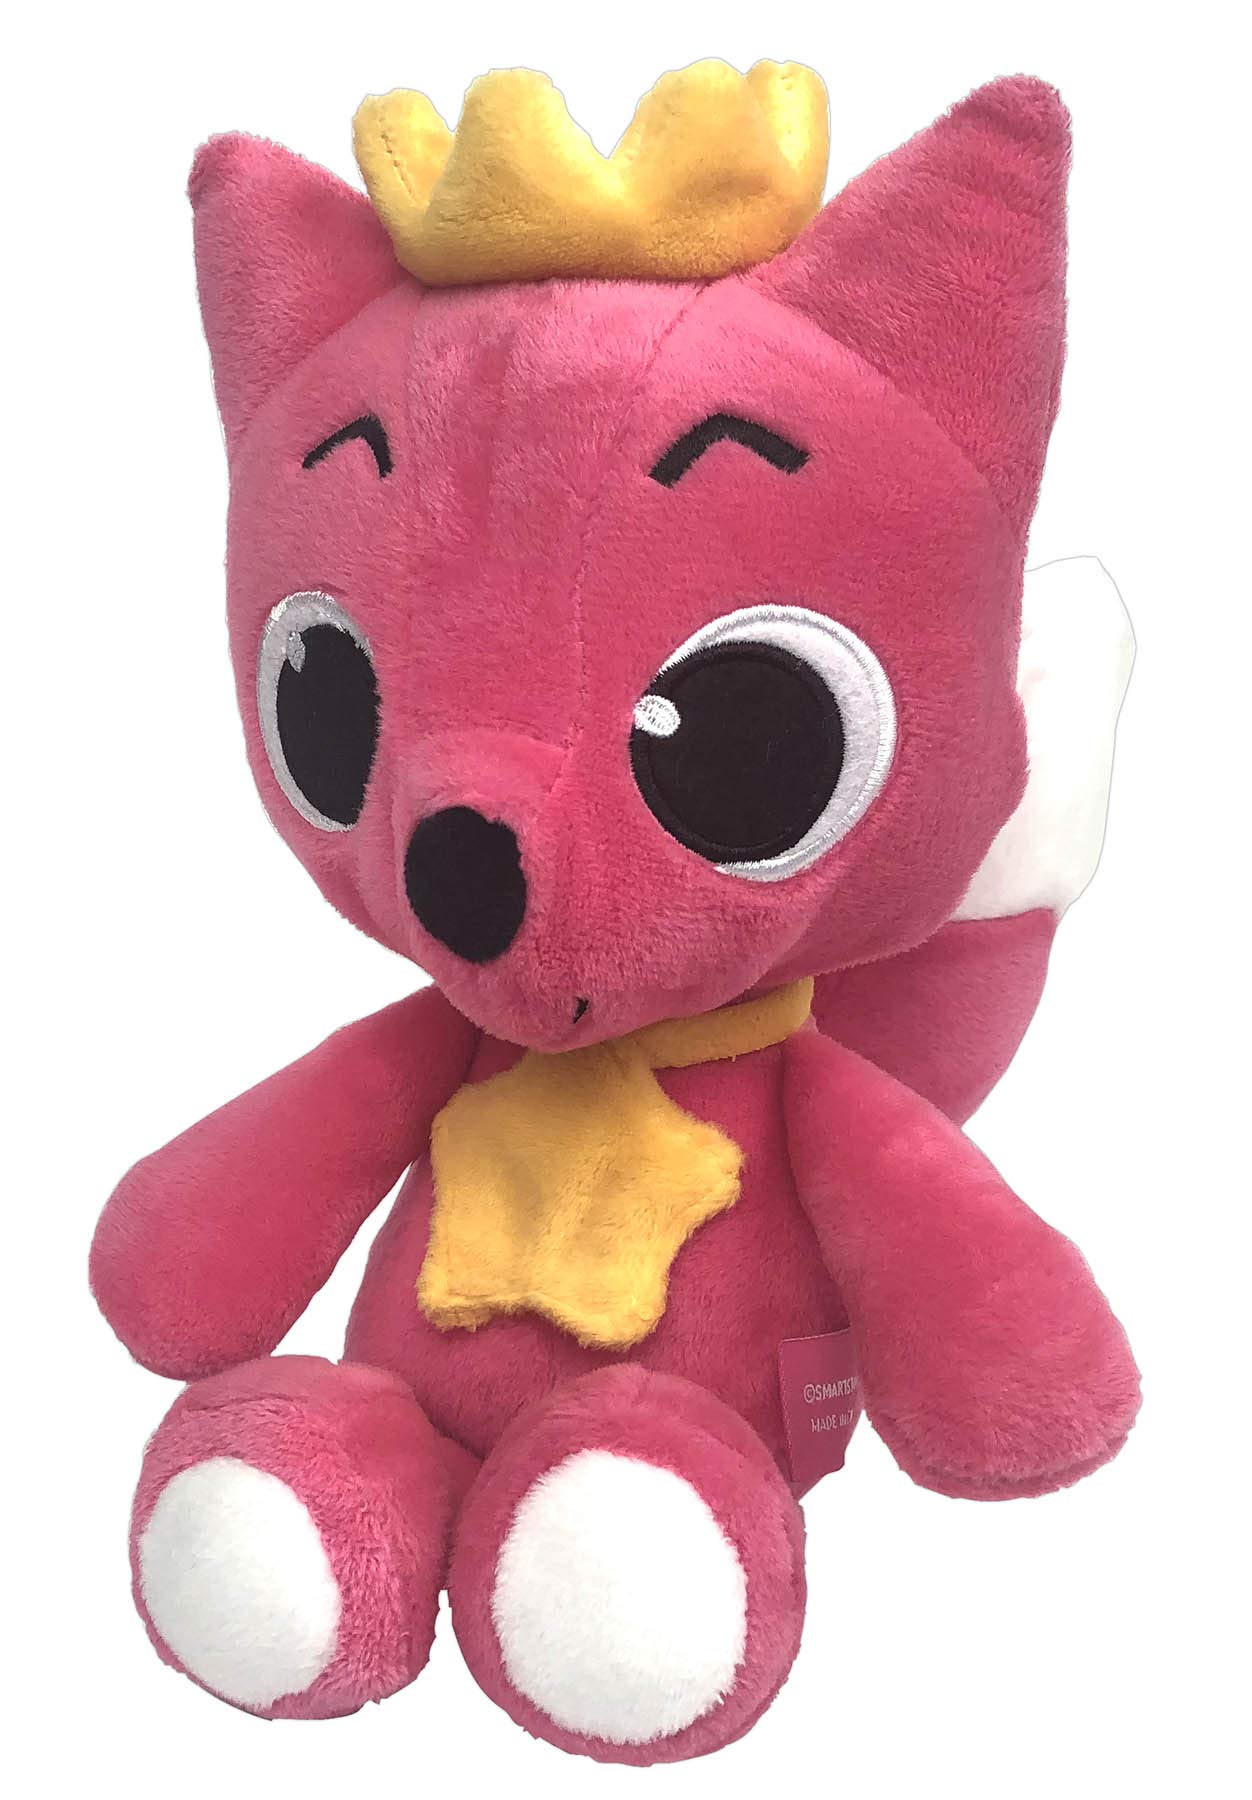 pinkfong plush doll